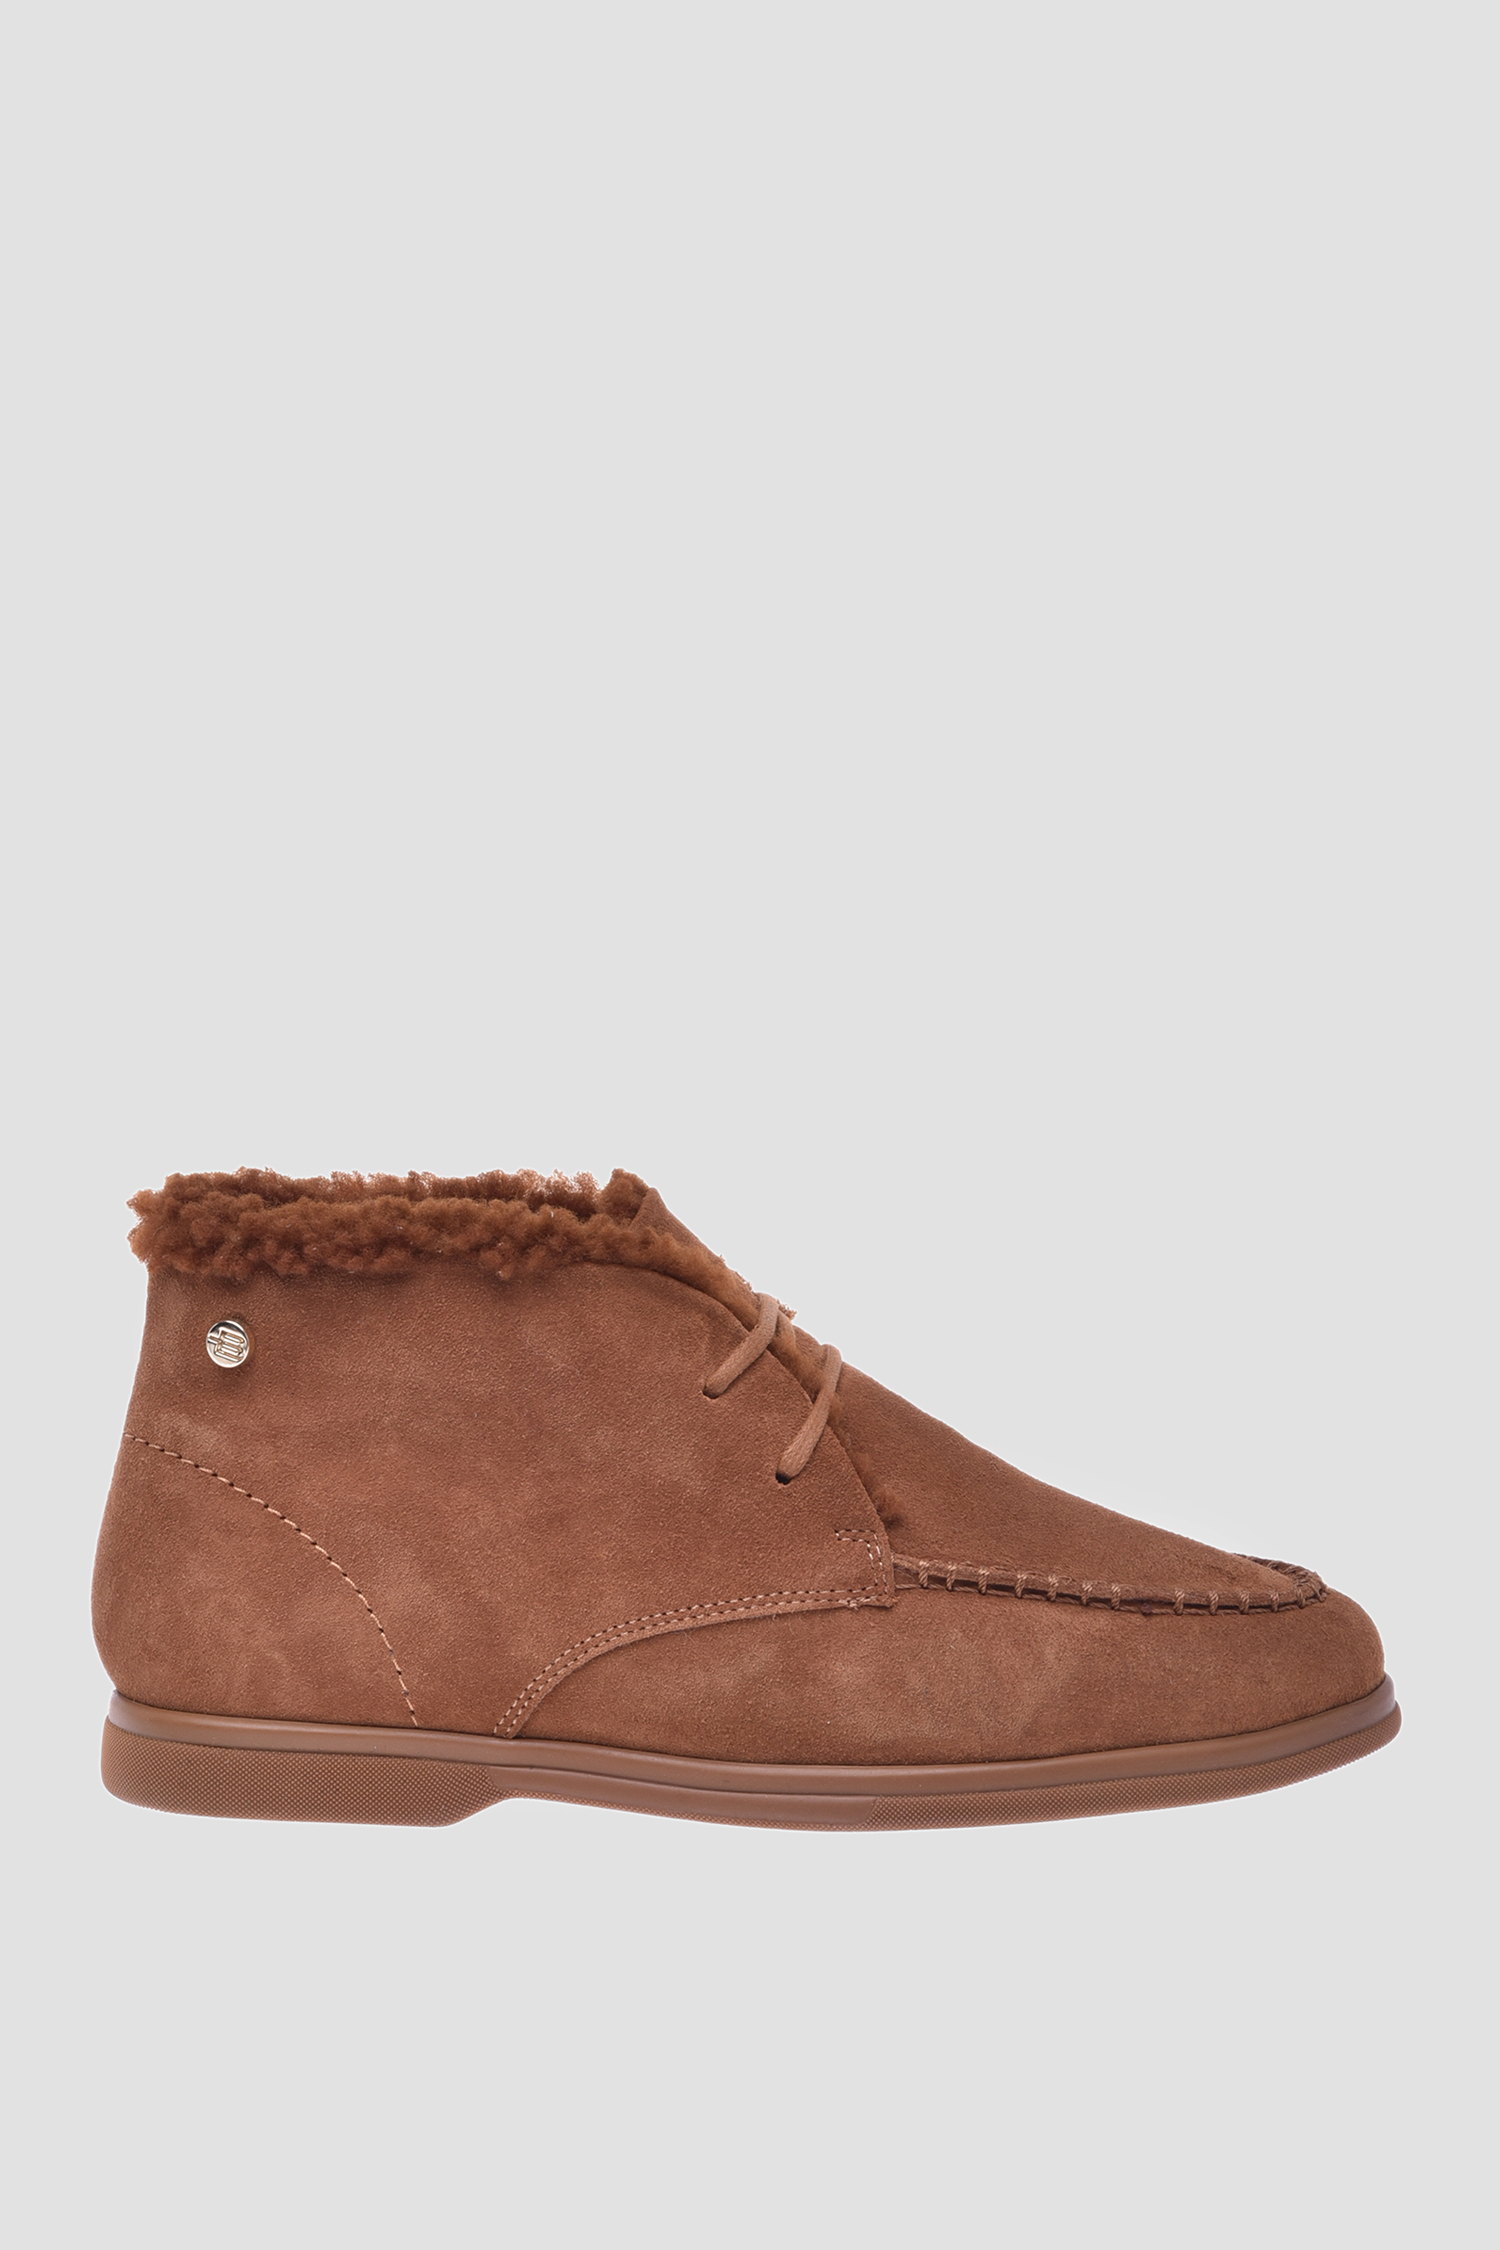 Женские коричневые замшевые ботинки Baldinini D3B255ROBY;4092